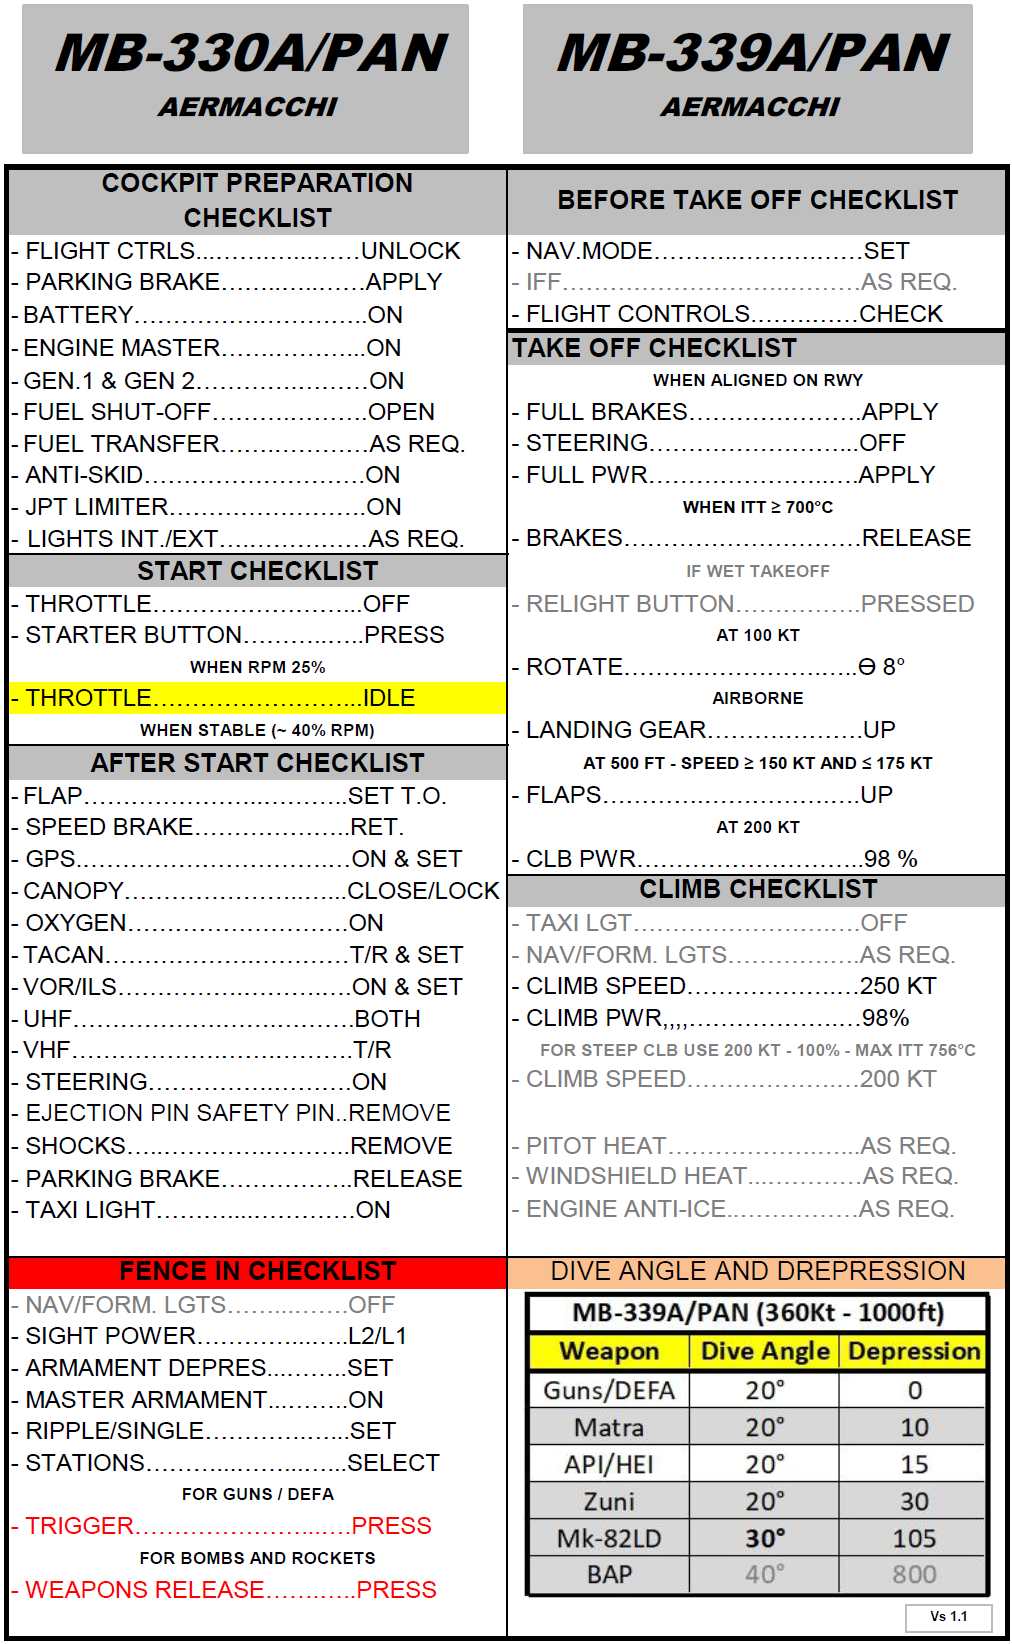 DCS MB-339A/PAN Quick Checklist (vs 1.1)